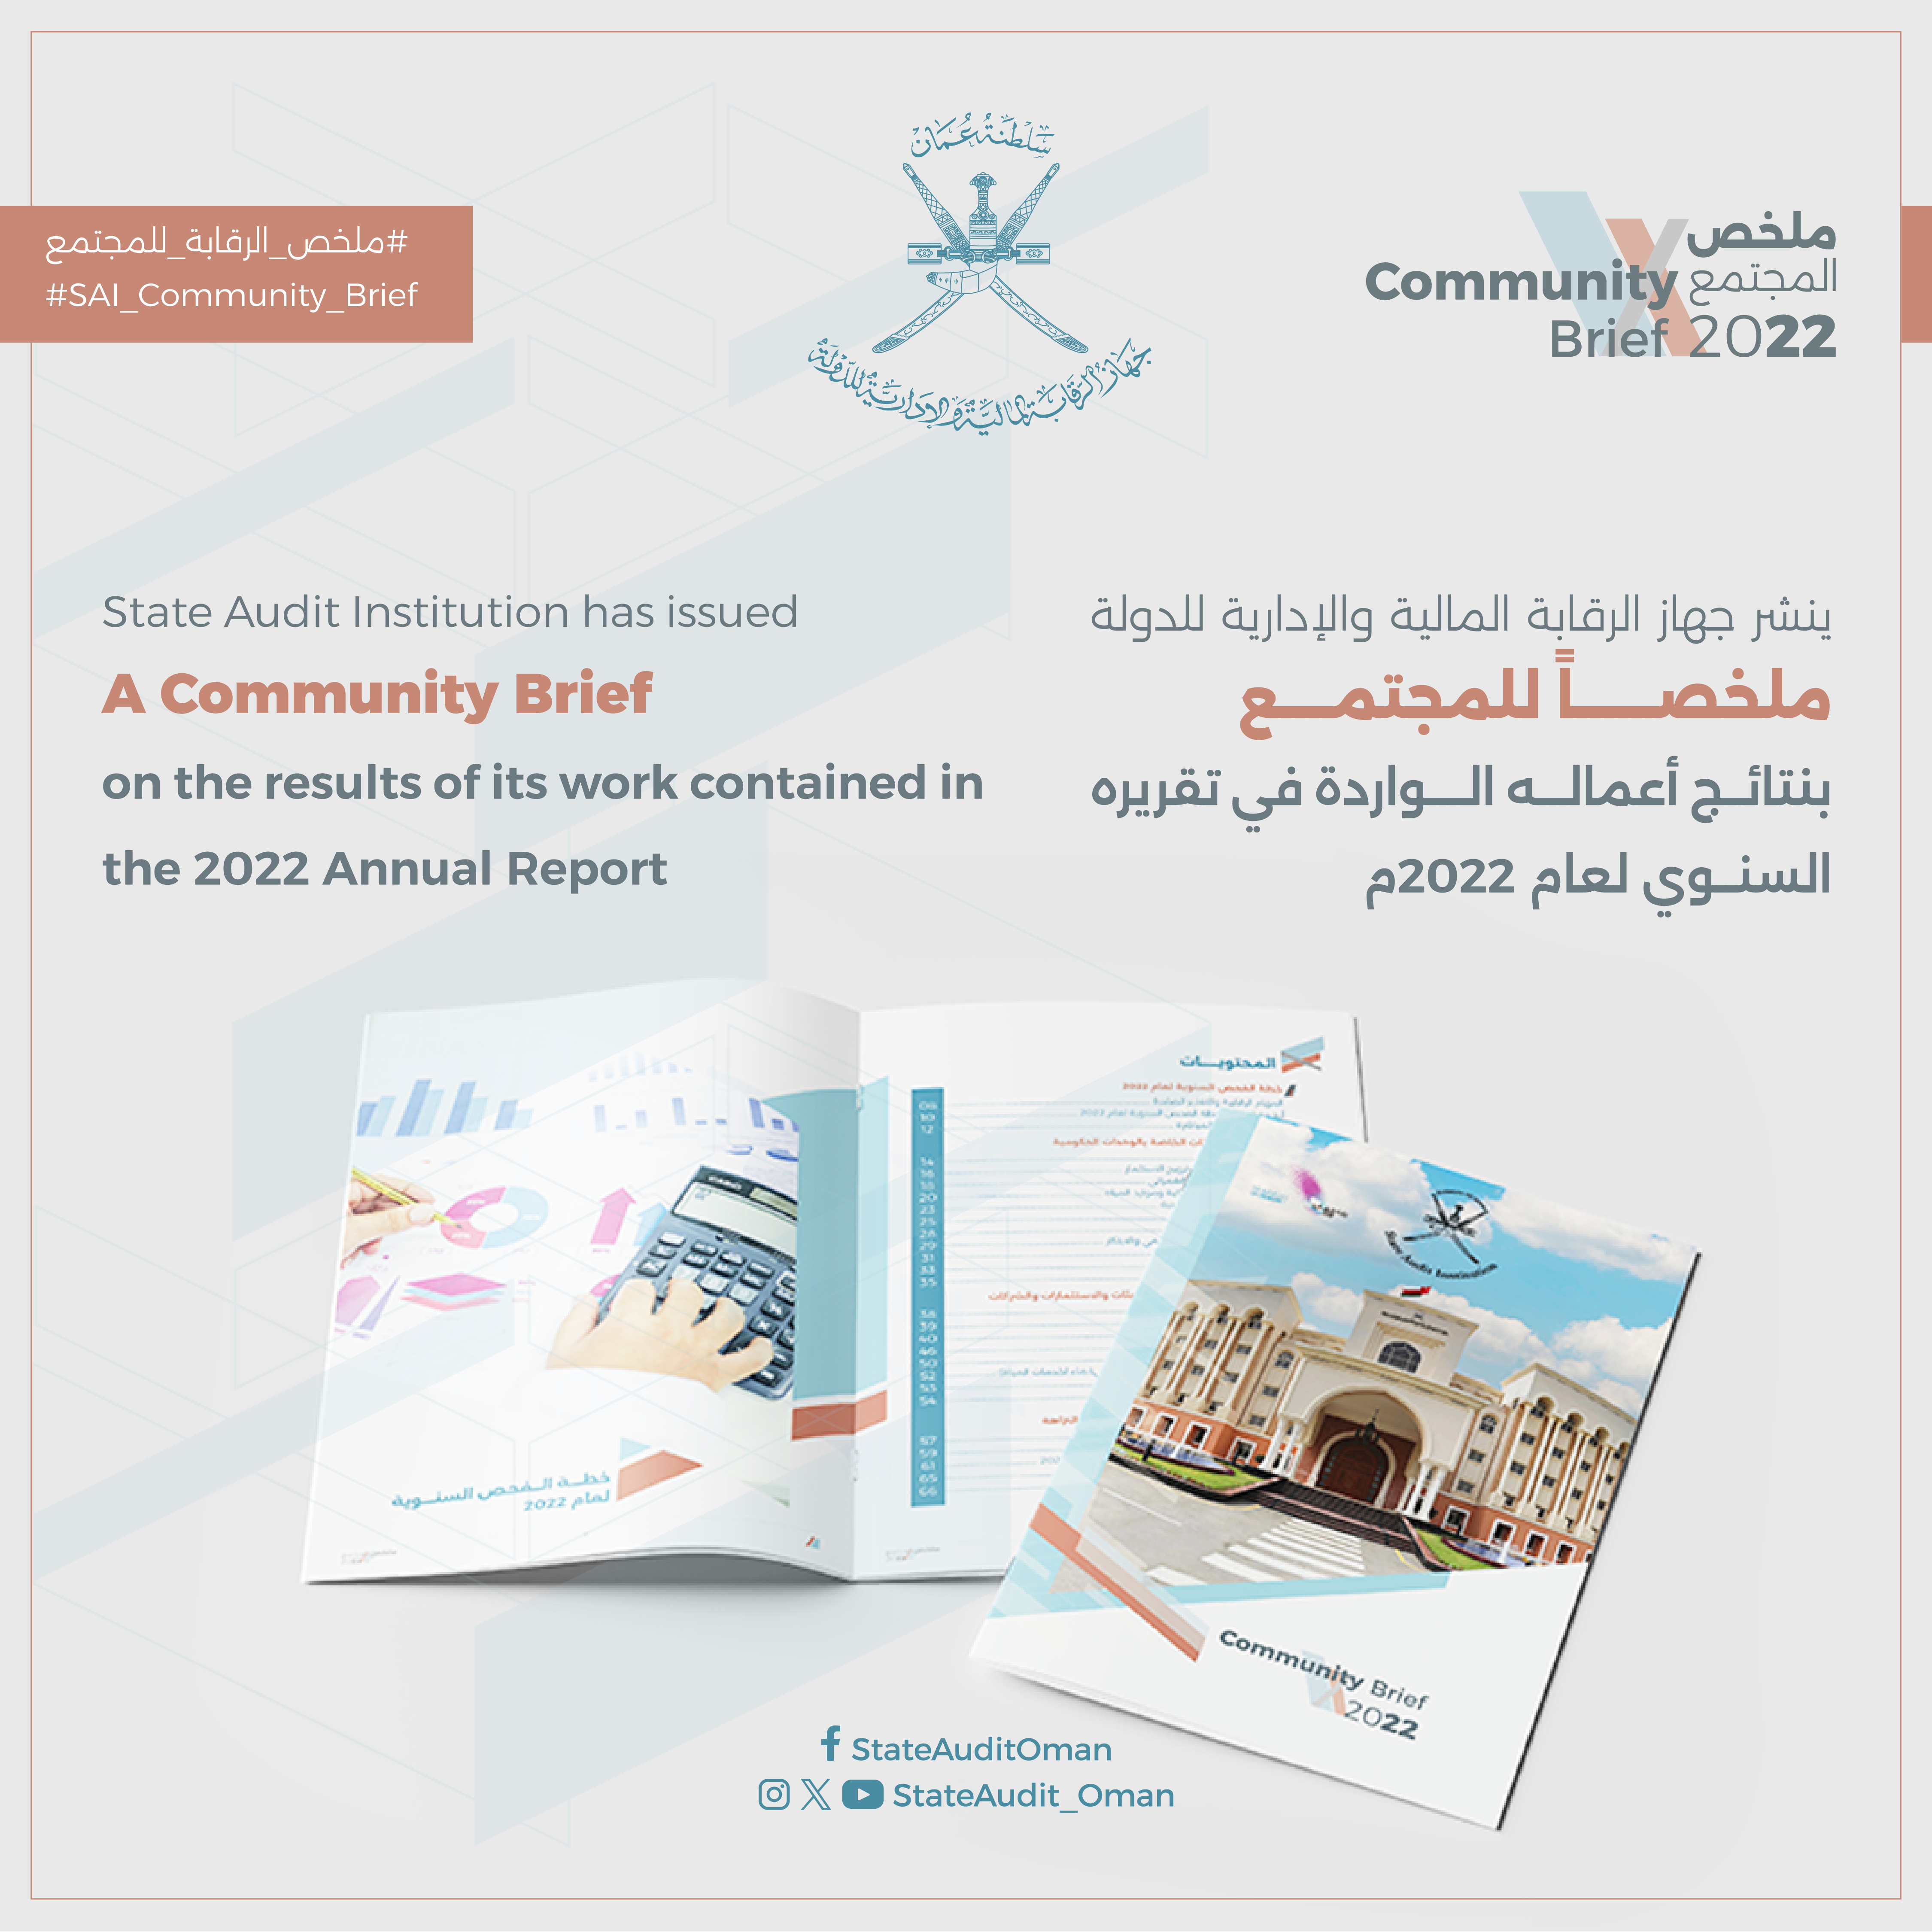 ملخص المجتمع بنتائج أعمال الجهاز الواردة في تقريره السنوي لعام 2022